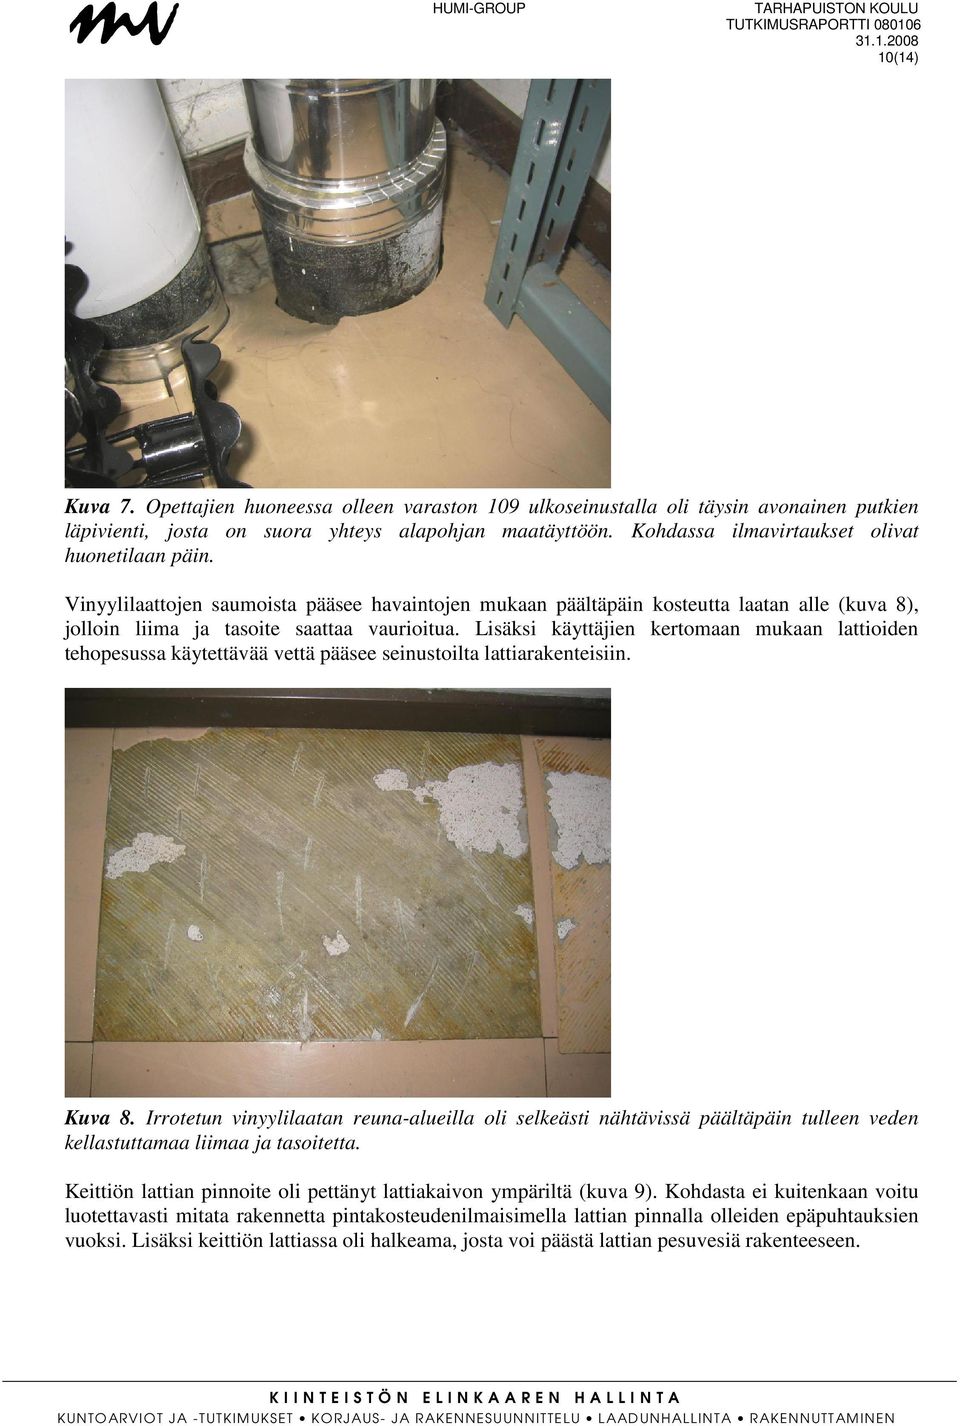 Lisäksi käyttäjien kertomaan mukaan lattioiden tehopesussa käytettävää vettä pääsee seinustoilta lattiarakenteisiin. Kuva 8.